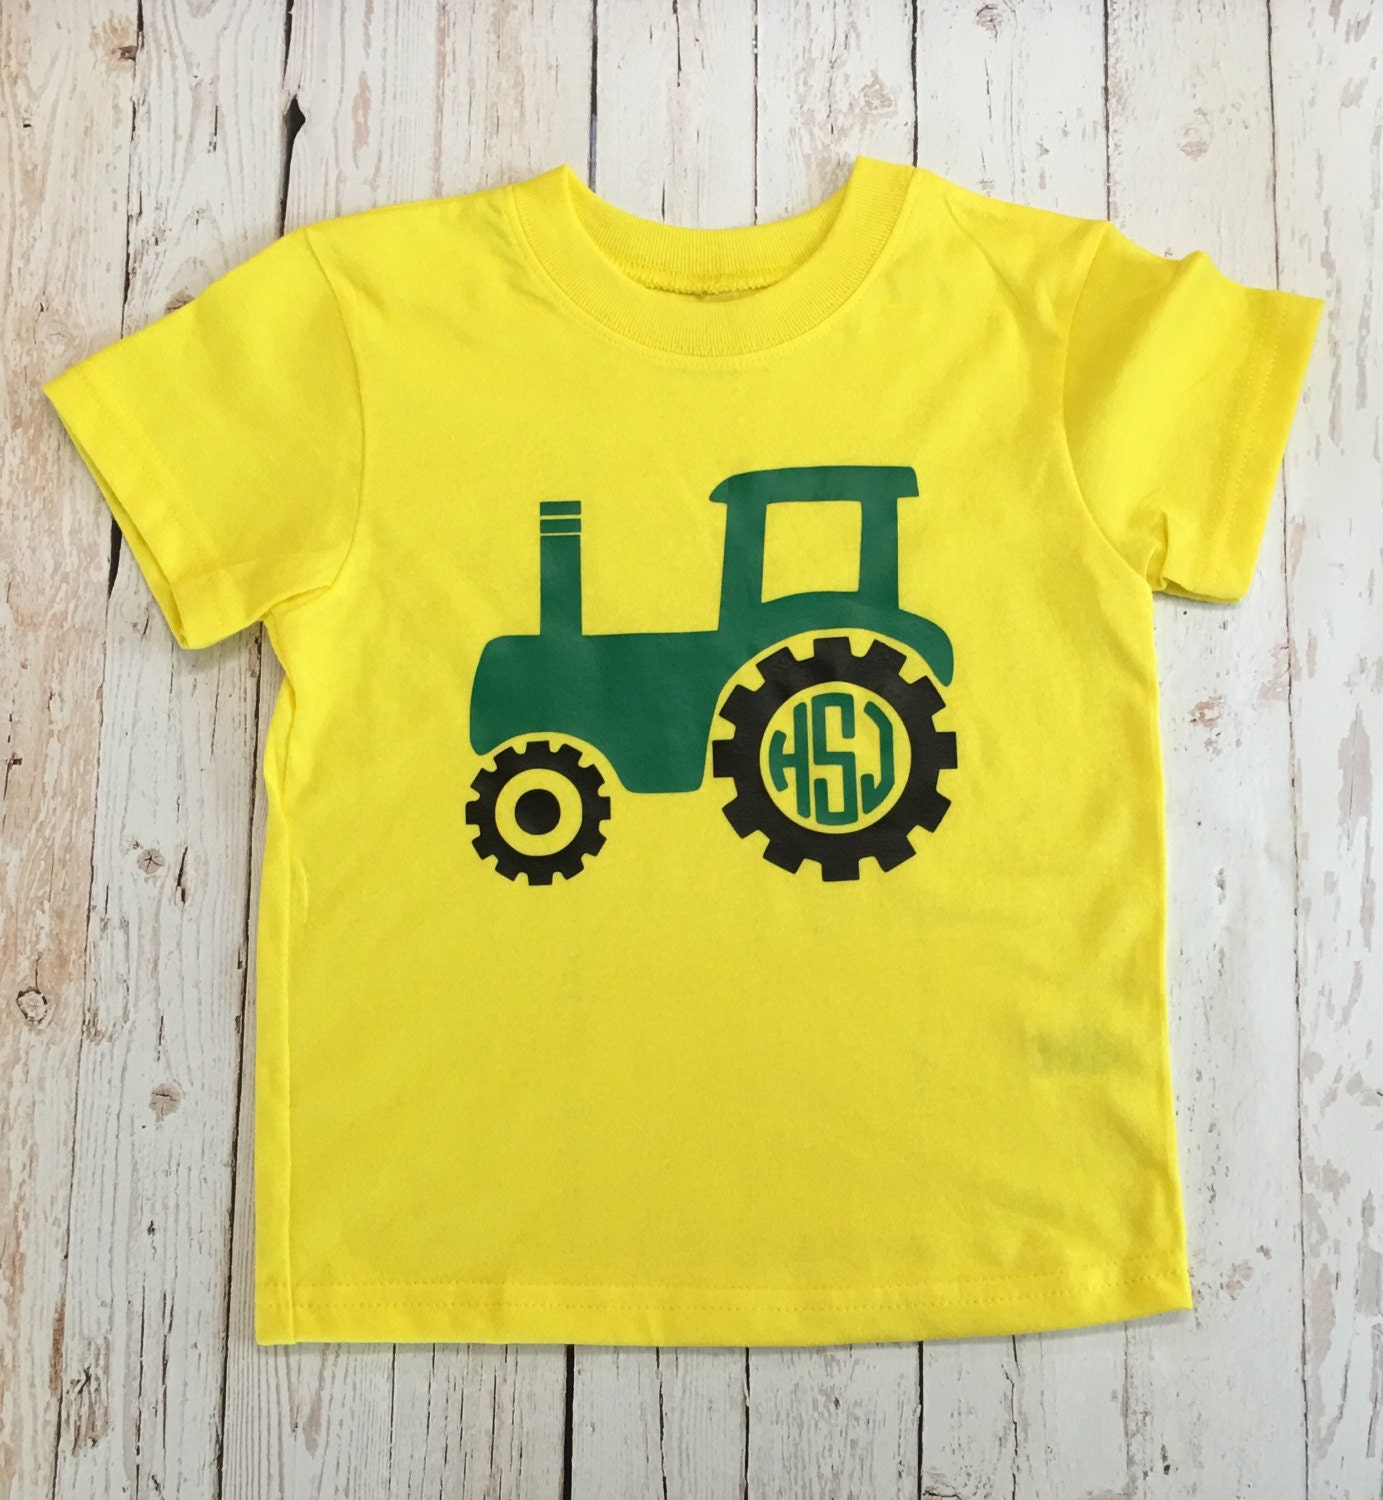 Youth Tractor Monogram Shirt vinyl shirt personalozed shirt